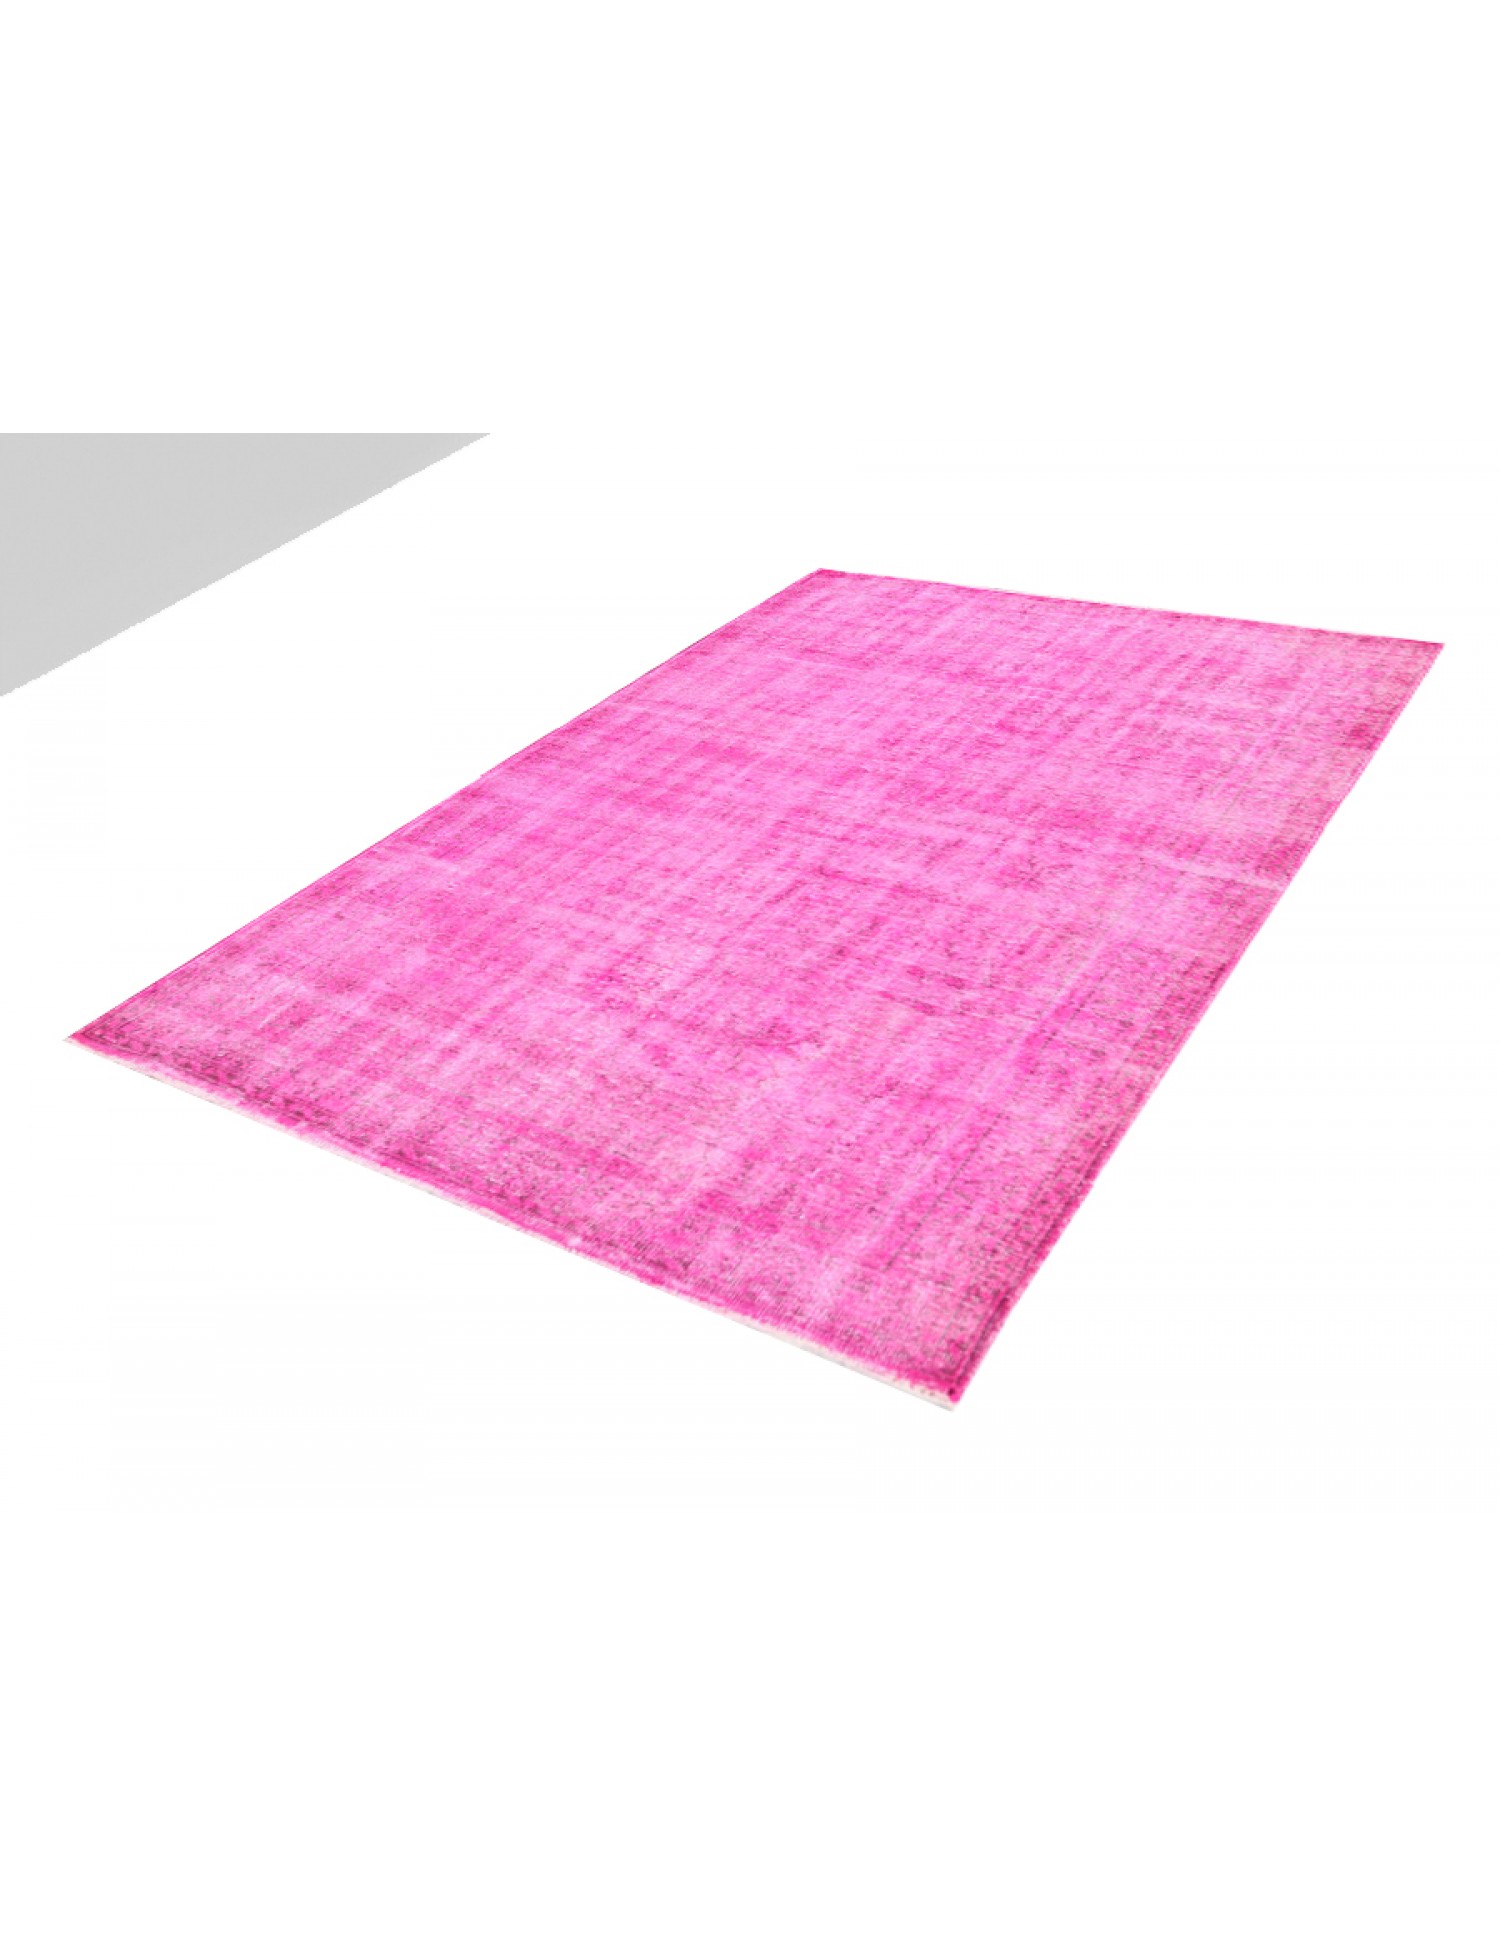 Vintage Teppich  rosa <br/>275 x 180 cm